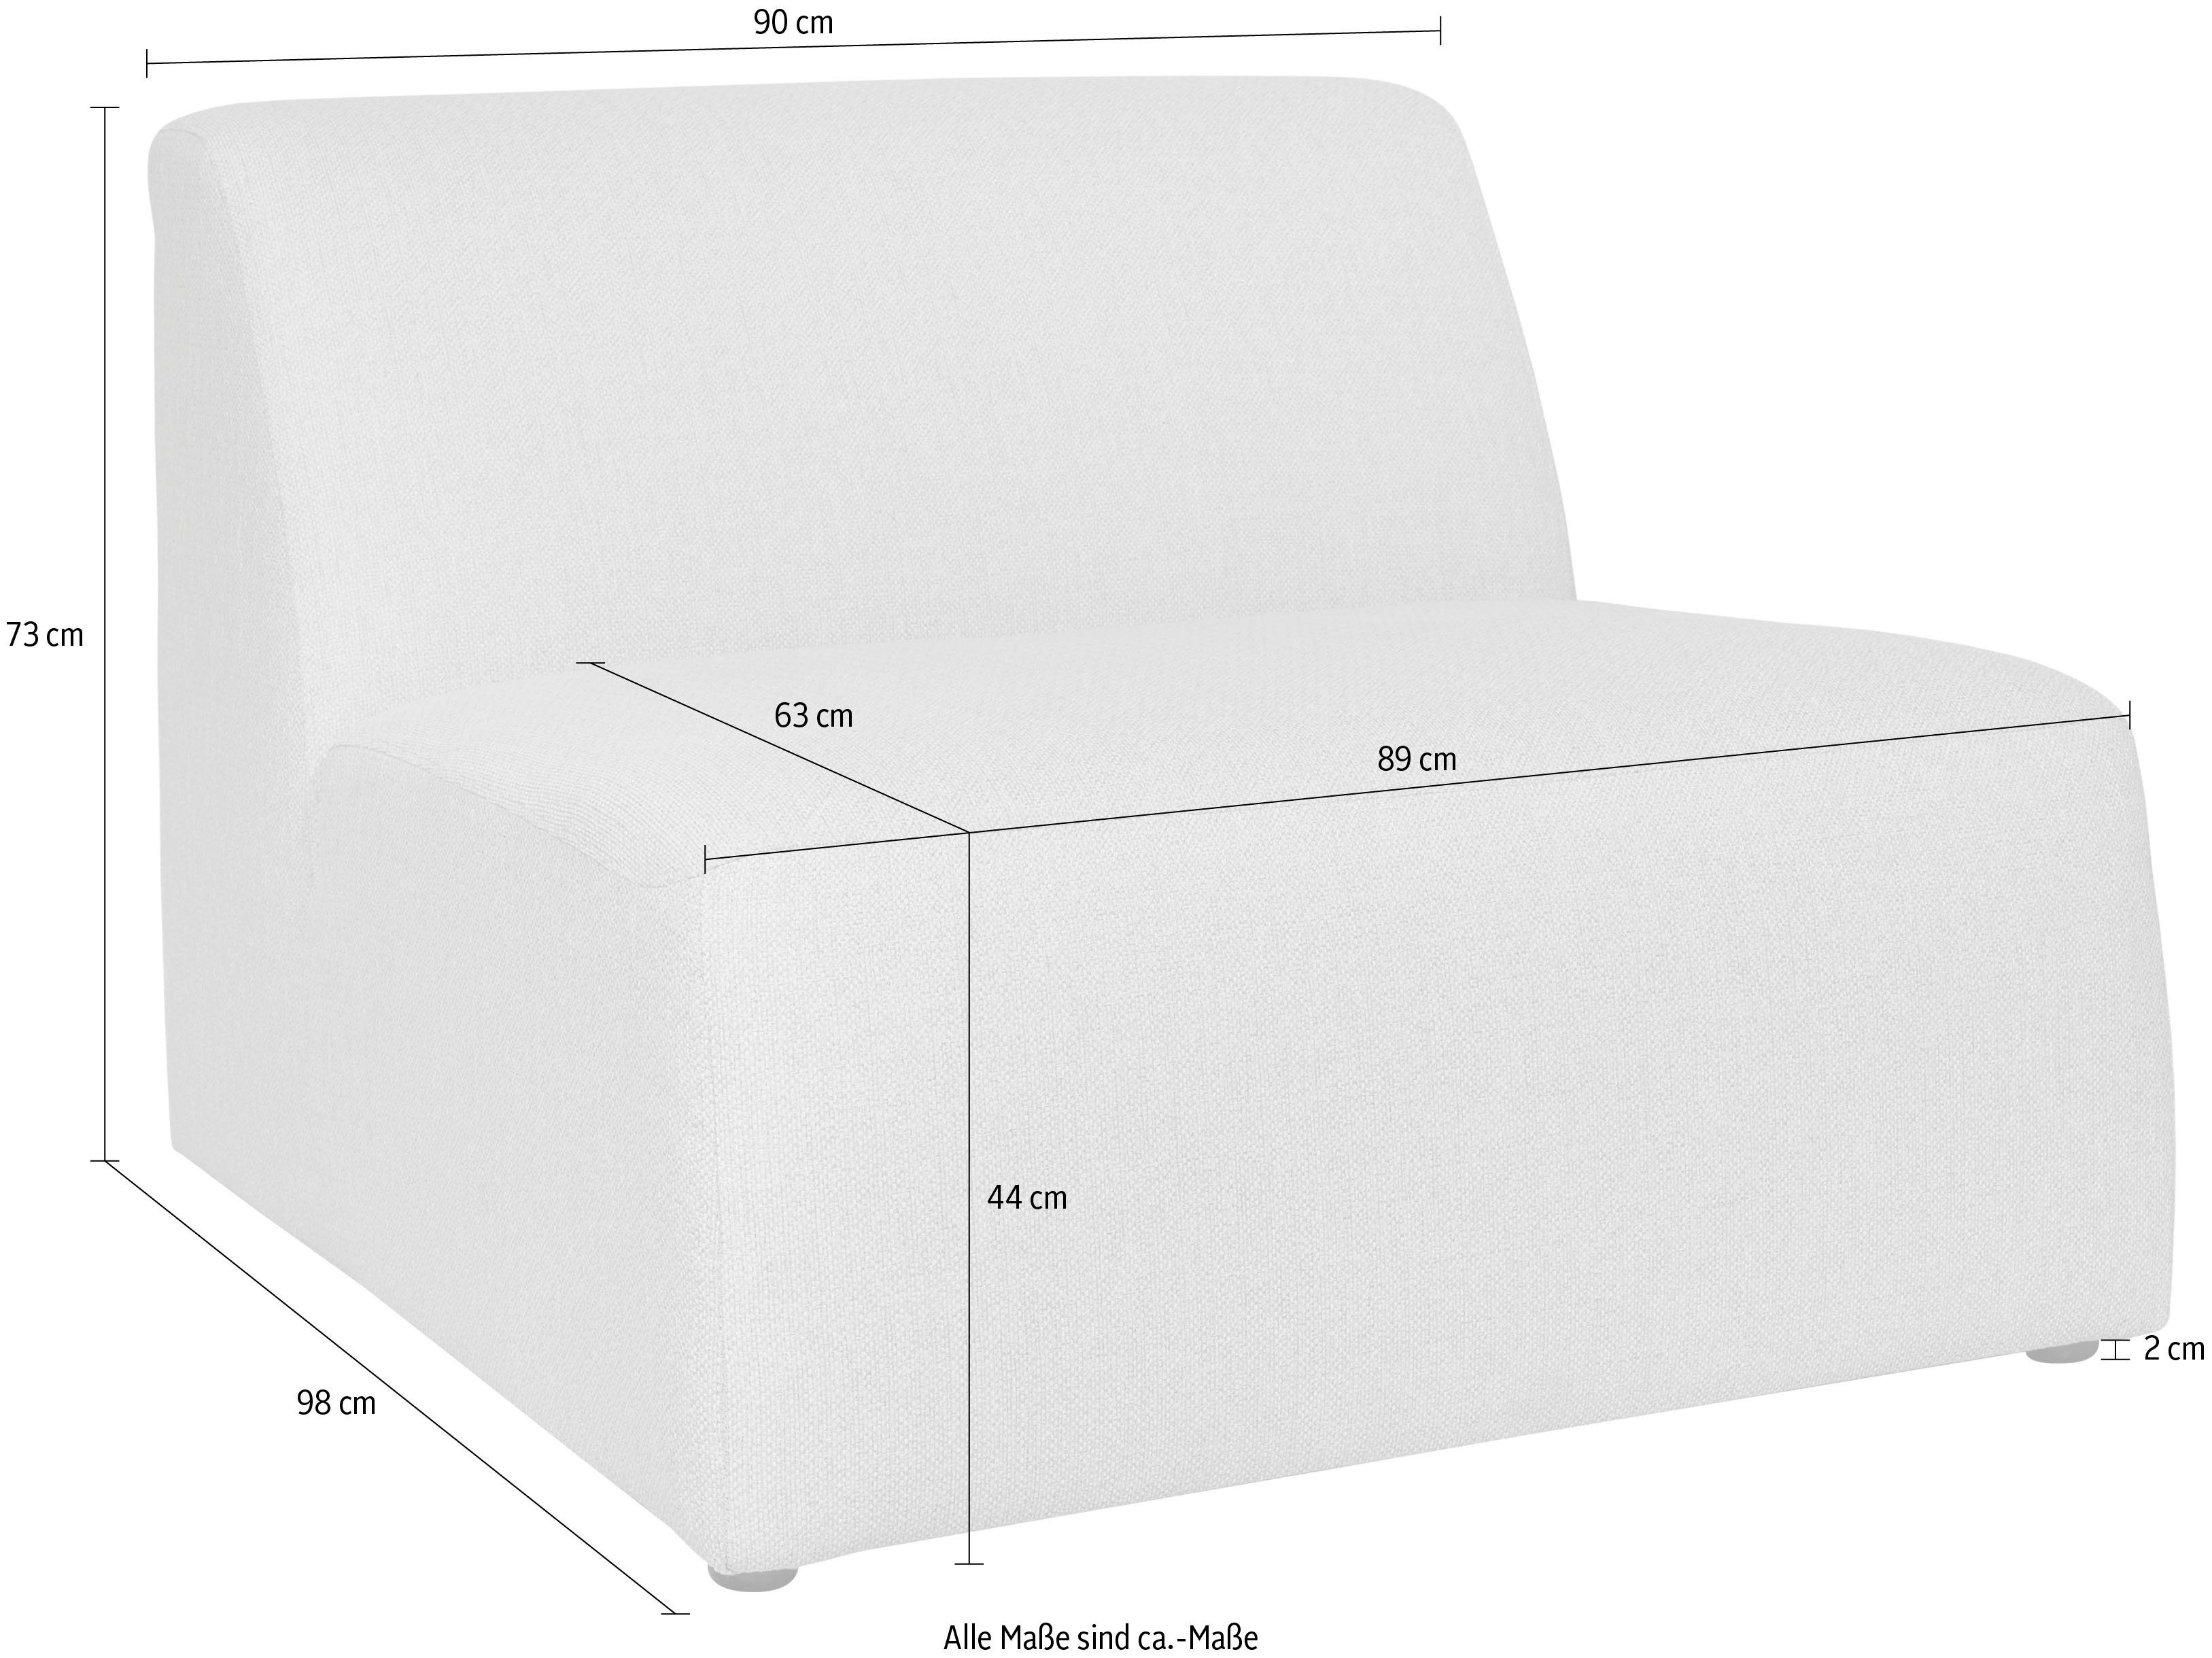 INOSIGN Sofa-Mittelelement Koa, angenehmer Proportionen beige schöne Komfort